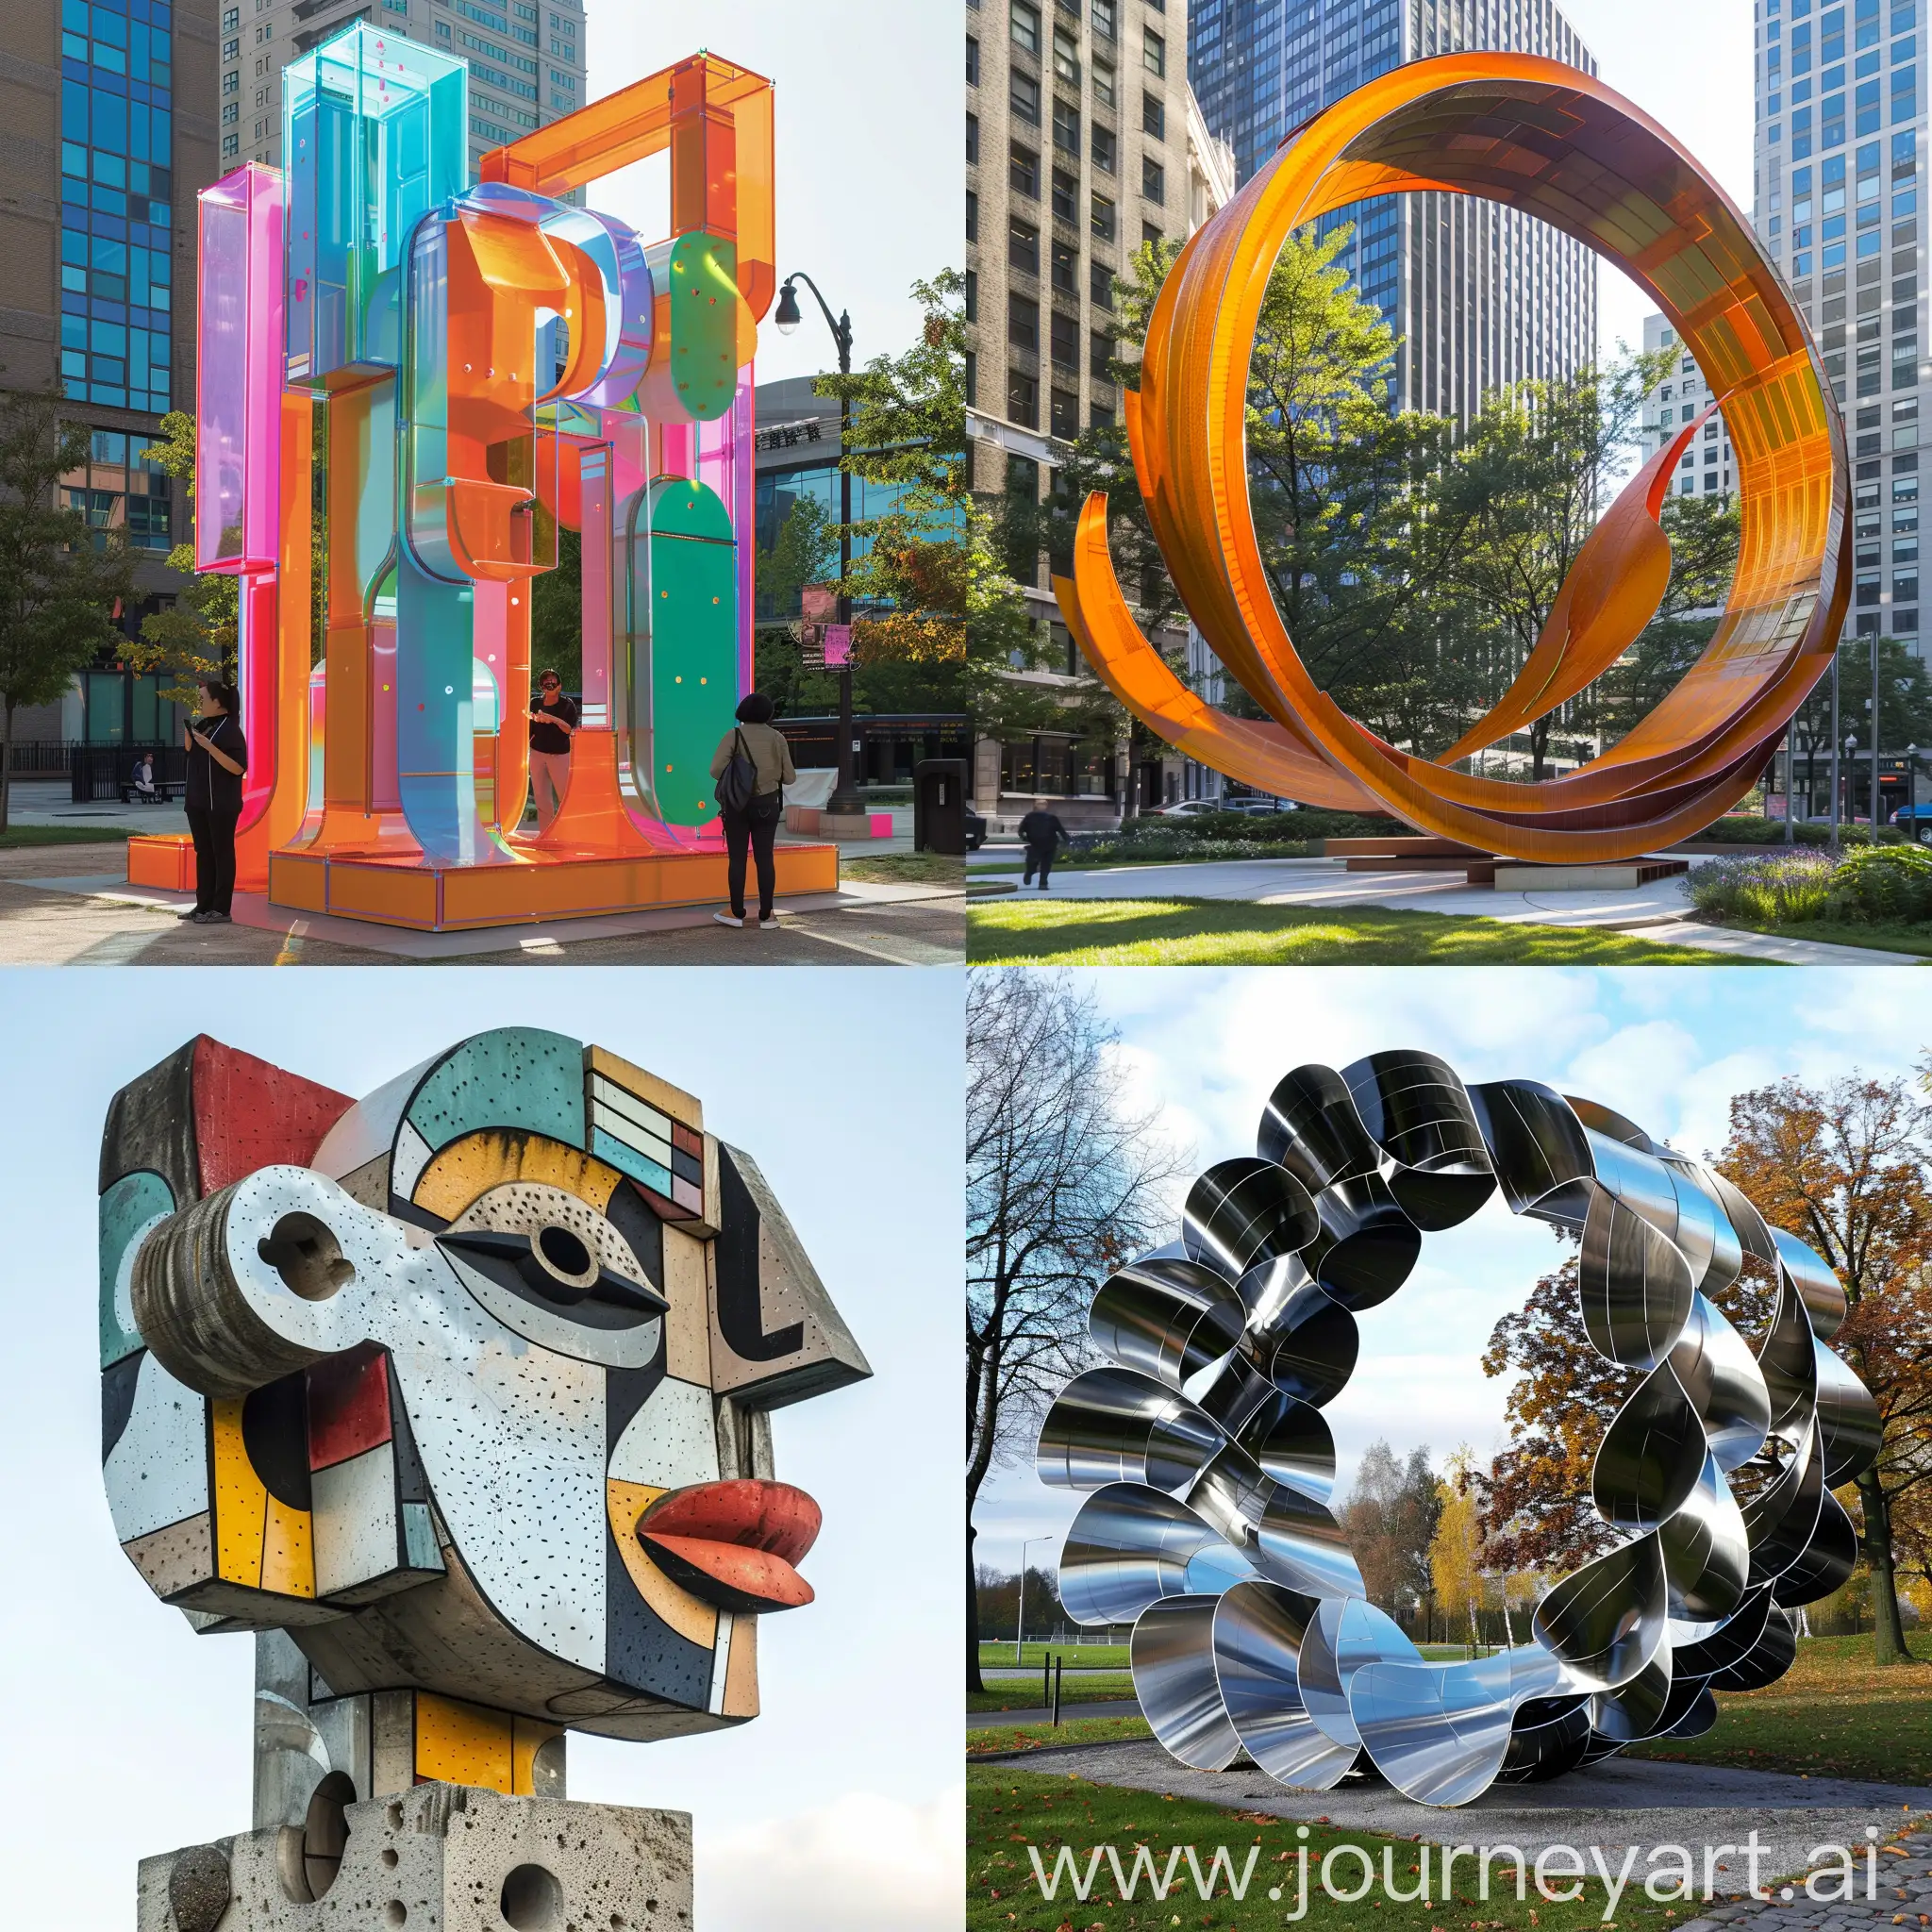 Interactive-Urban-Sculpture-Exploring-Art-and-Culture